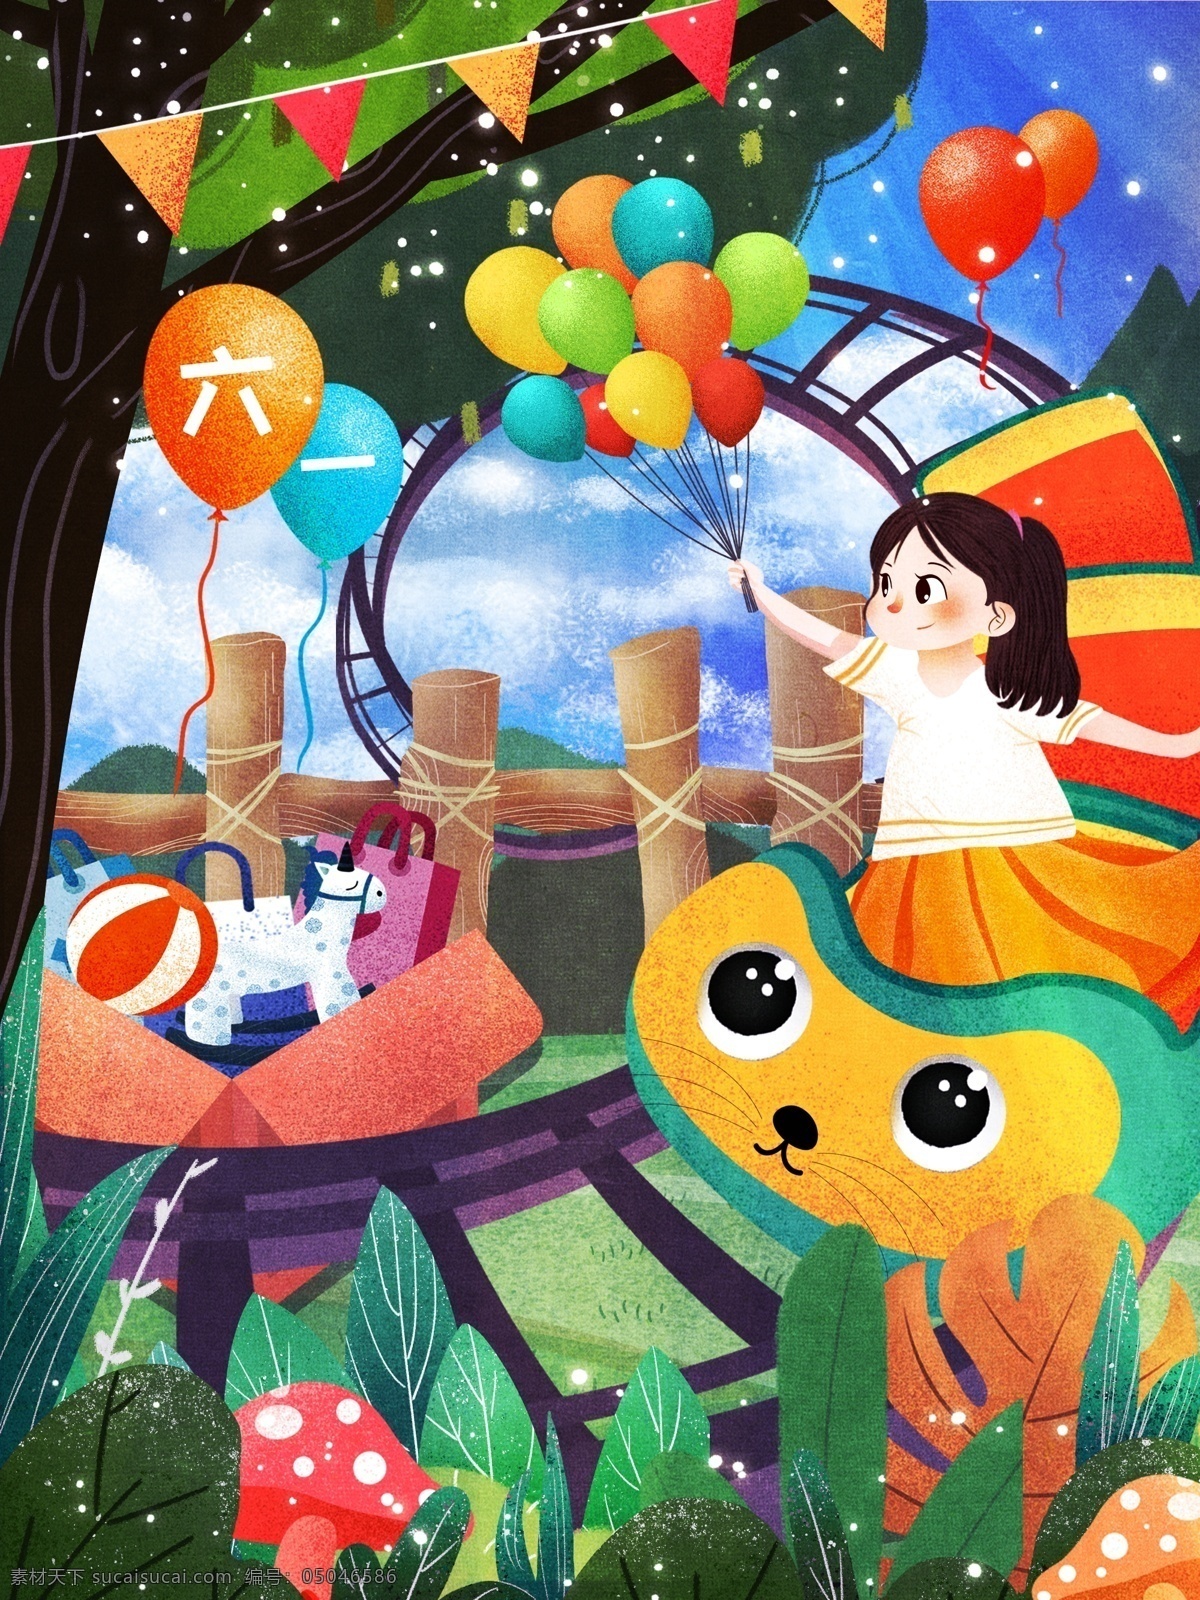 原创 插画 儿童节 欢乐 儿童 节日 节日插画 儿童插画 过山车 气球 礼物 礼物插画 人物插画 人物